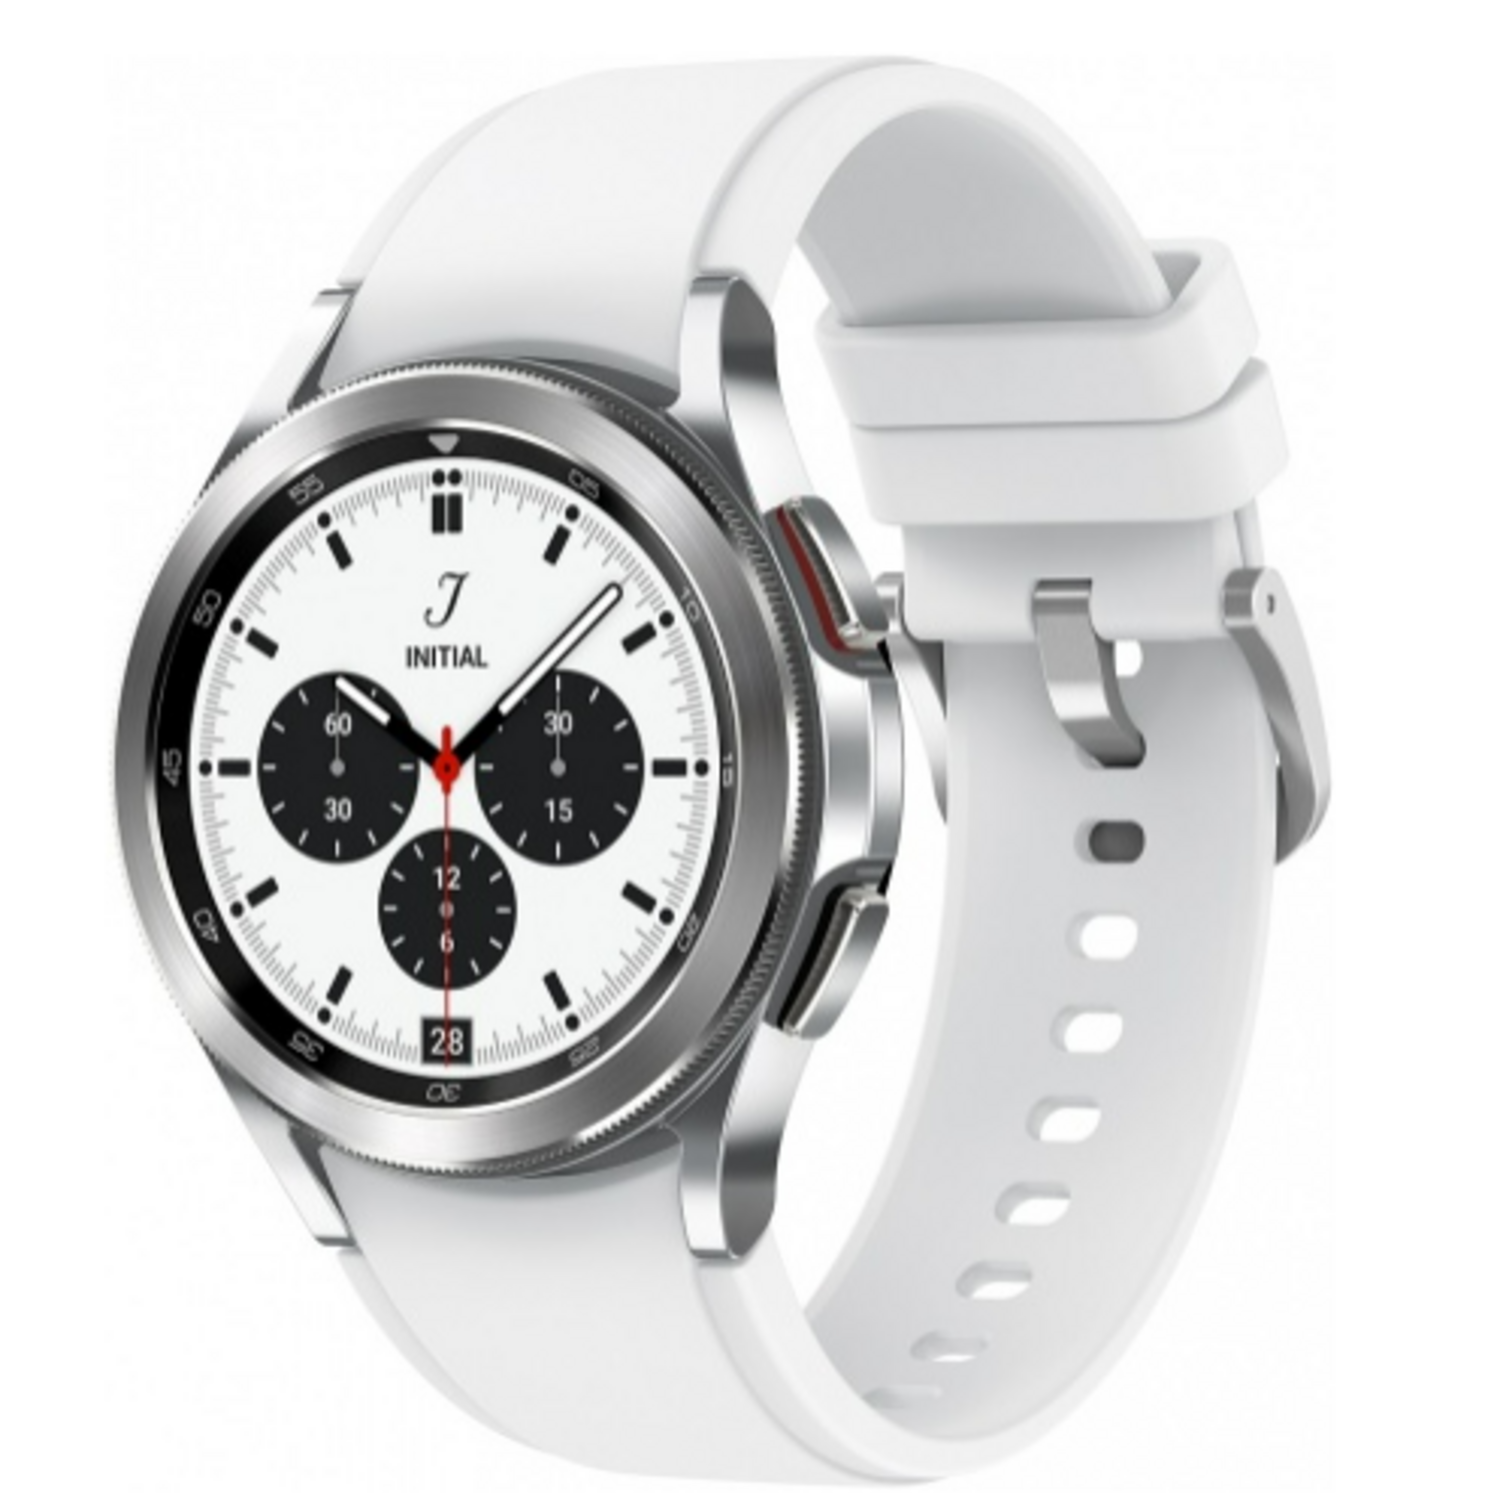 Новые и обновленные б/у смарт-часы Samsung Galaxy Watch 4 Classic 42mm в  Москве — купить недорого в SmartPrice